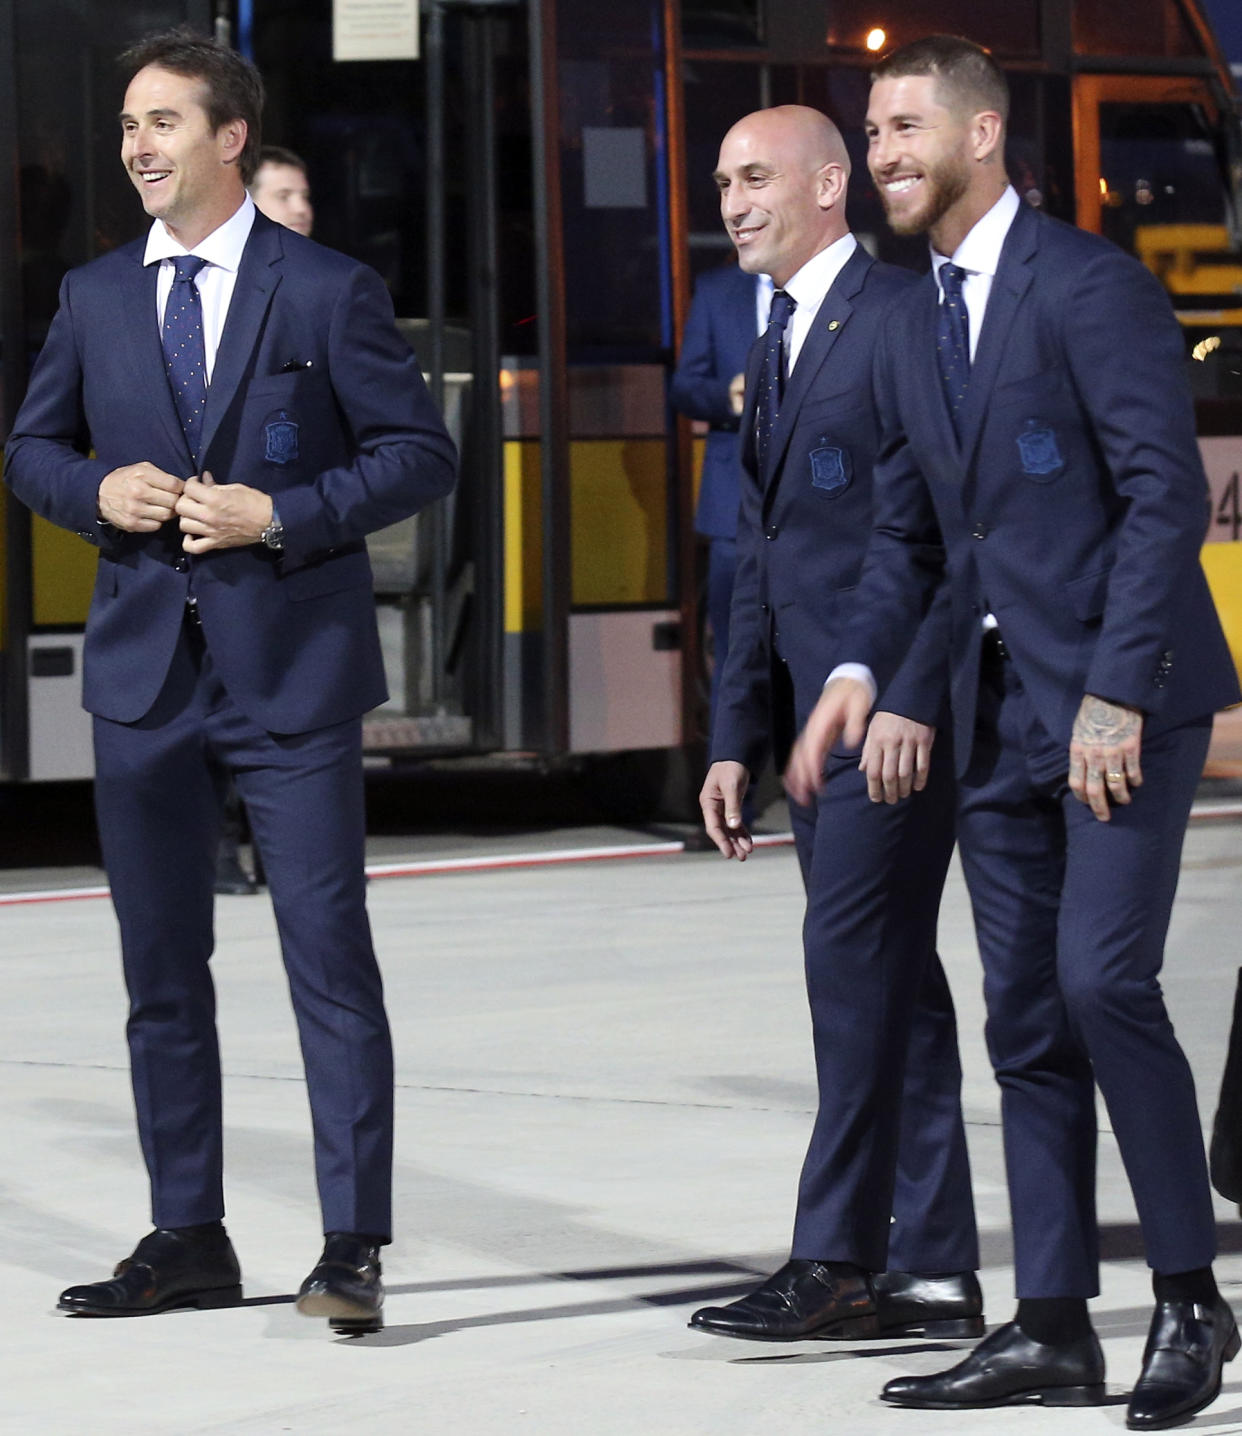 El seleccionador español Julen Lopetegui, el capitán Sergio Ramos y el presidente de la RFEF, Luis Rubiales, sonríen tras llegar al aeropuerto Pashkovsky de Krasnodar (Rusia) (Foto: AP Photo/ Evgeny Reznik)